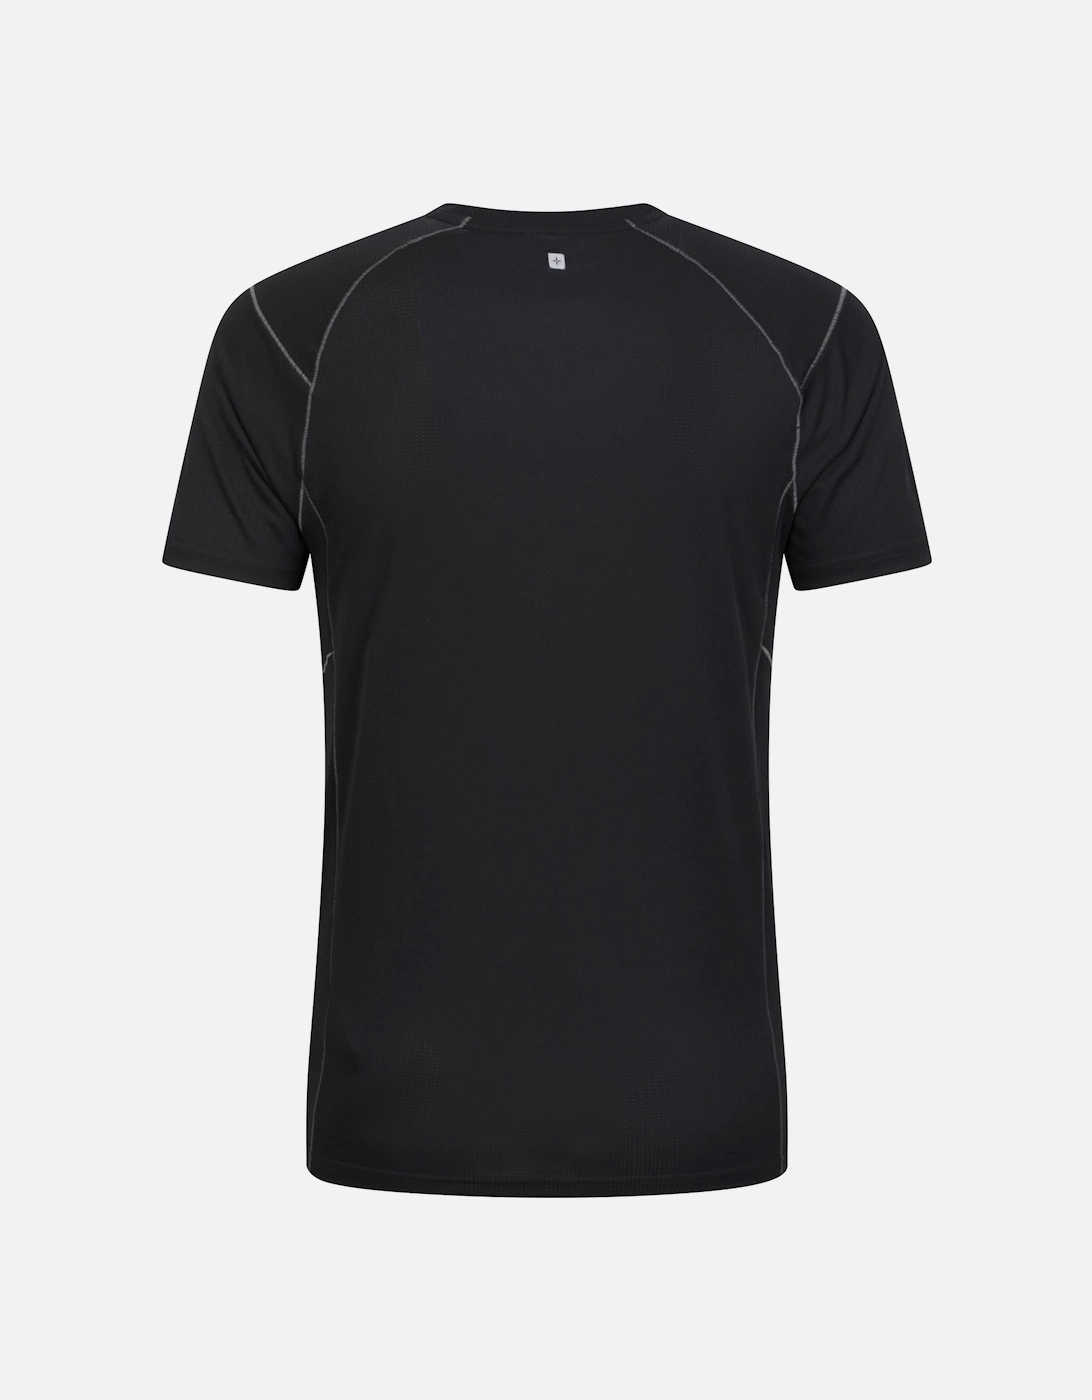 Mens Approach Lightweight Hiking T-Shirt